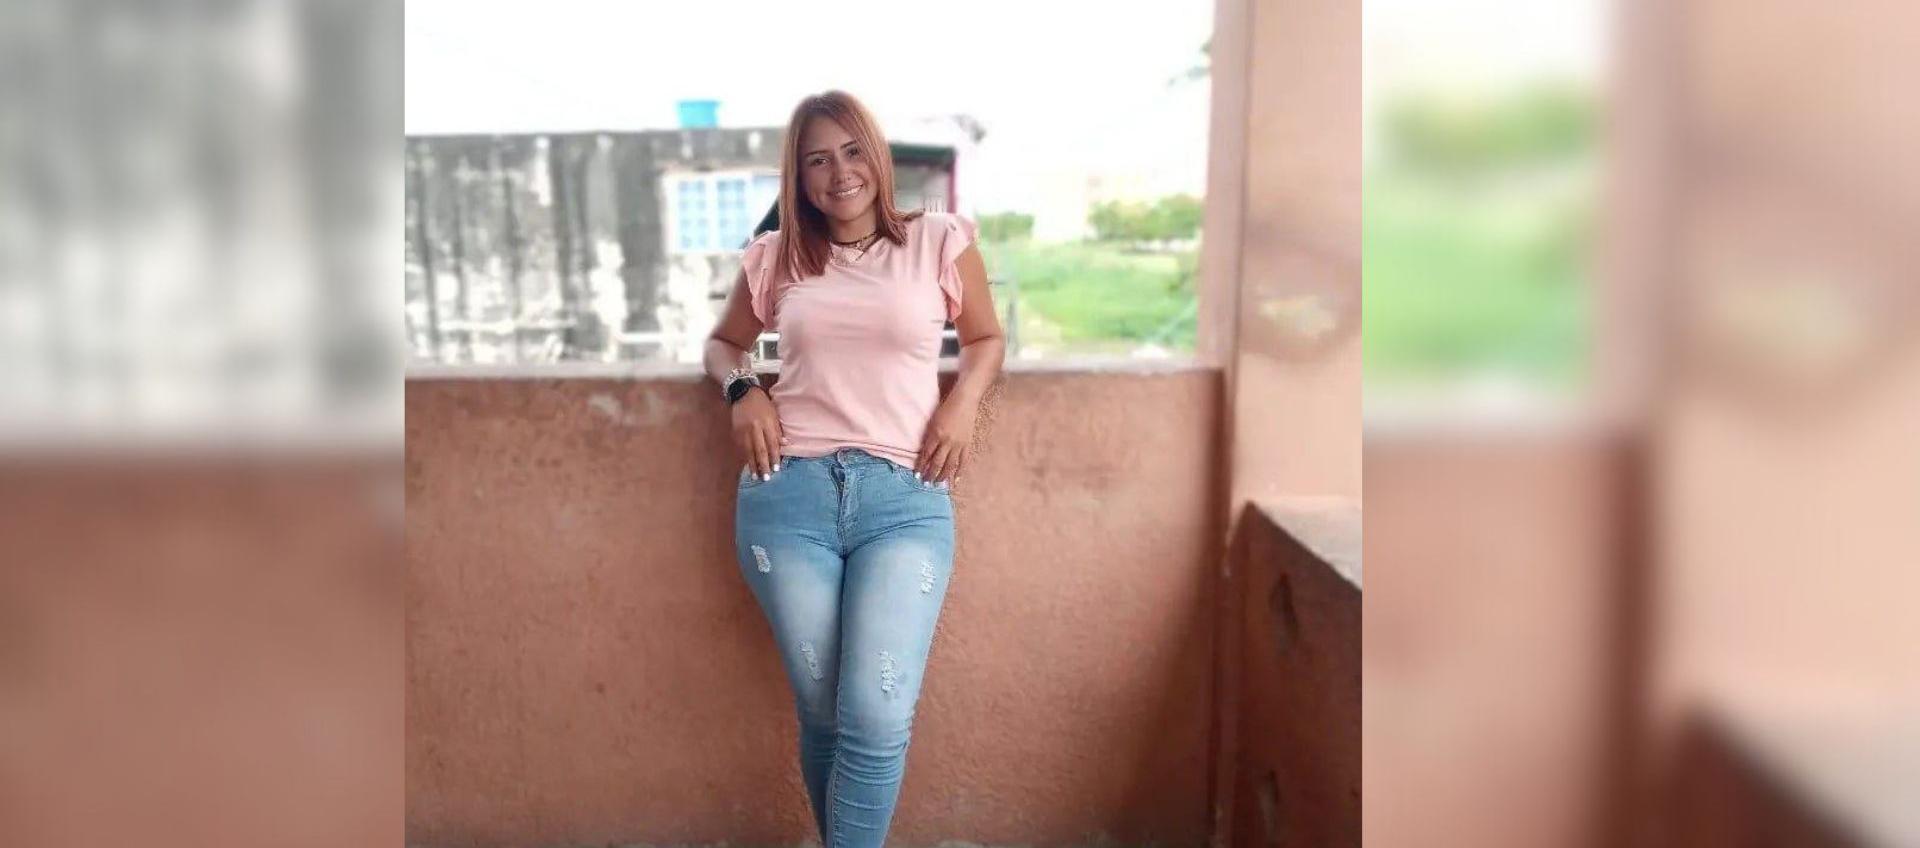 Revelan la última llamada de venezolana que murió por rayo en Colombia y detalles de su vida